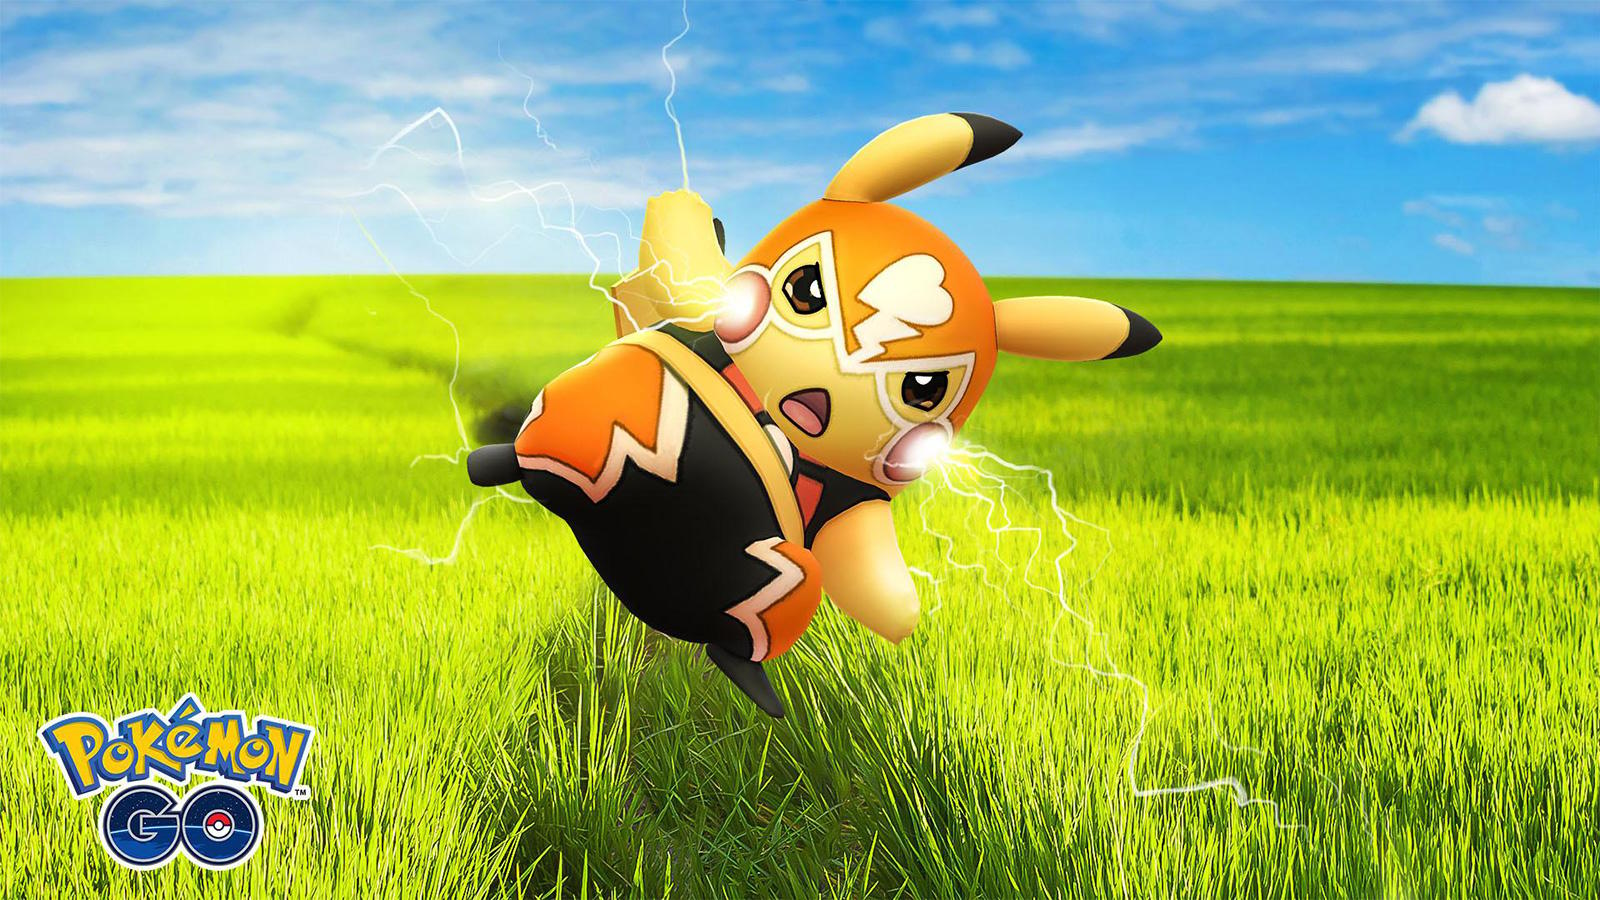 Pokemon Go promotion for Pikachu Libre Battle League Season 1.